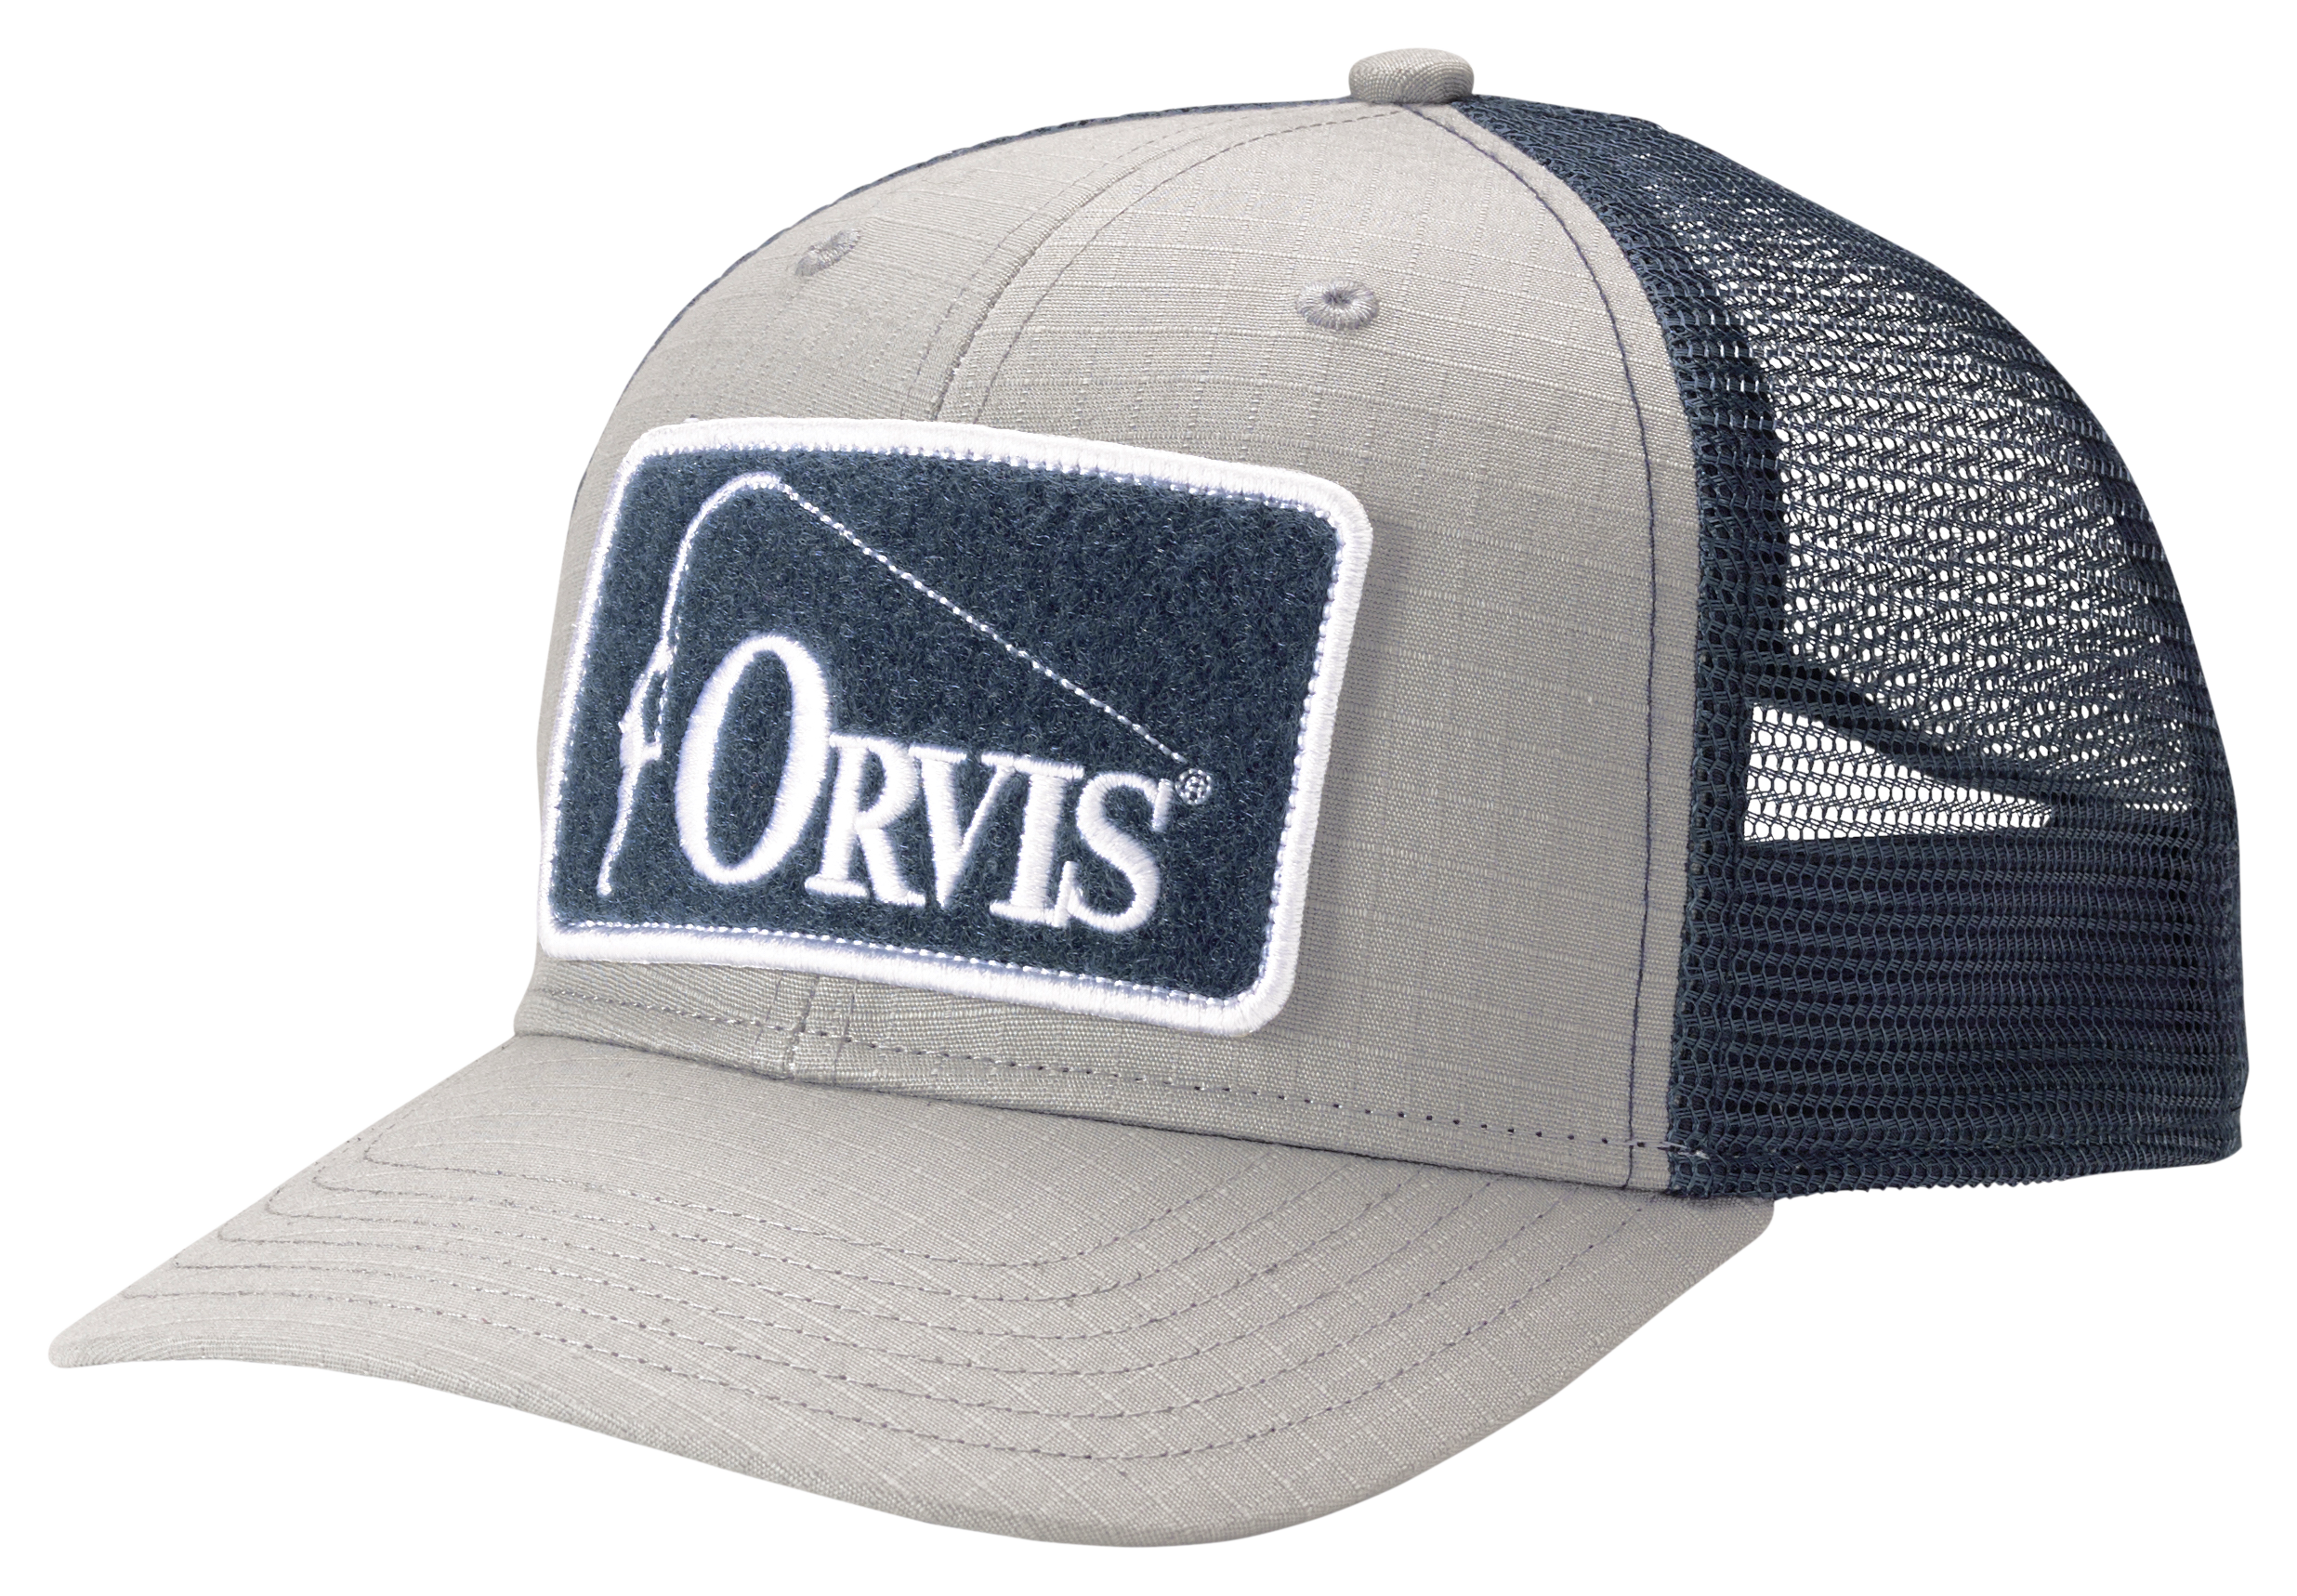 Orvis Ripstop Covert Trucker Cap